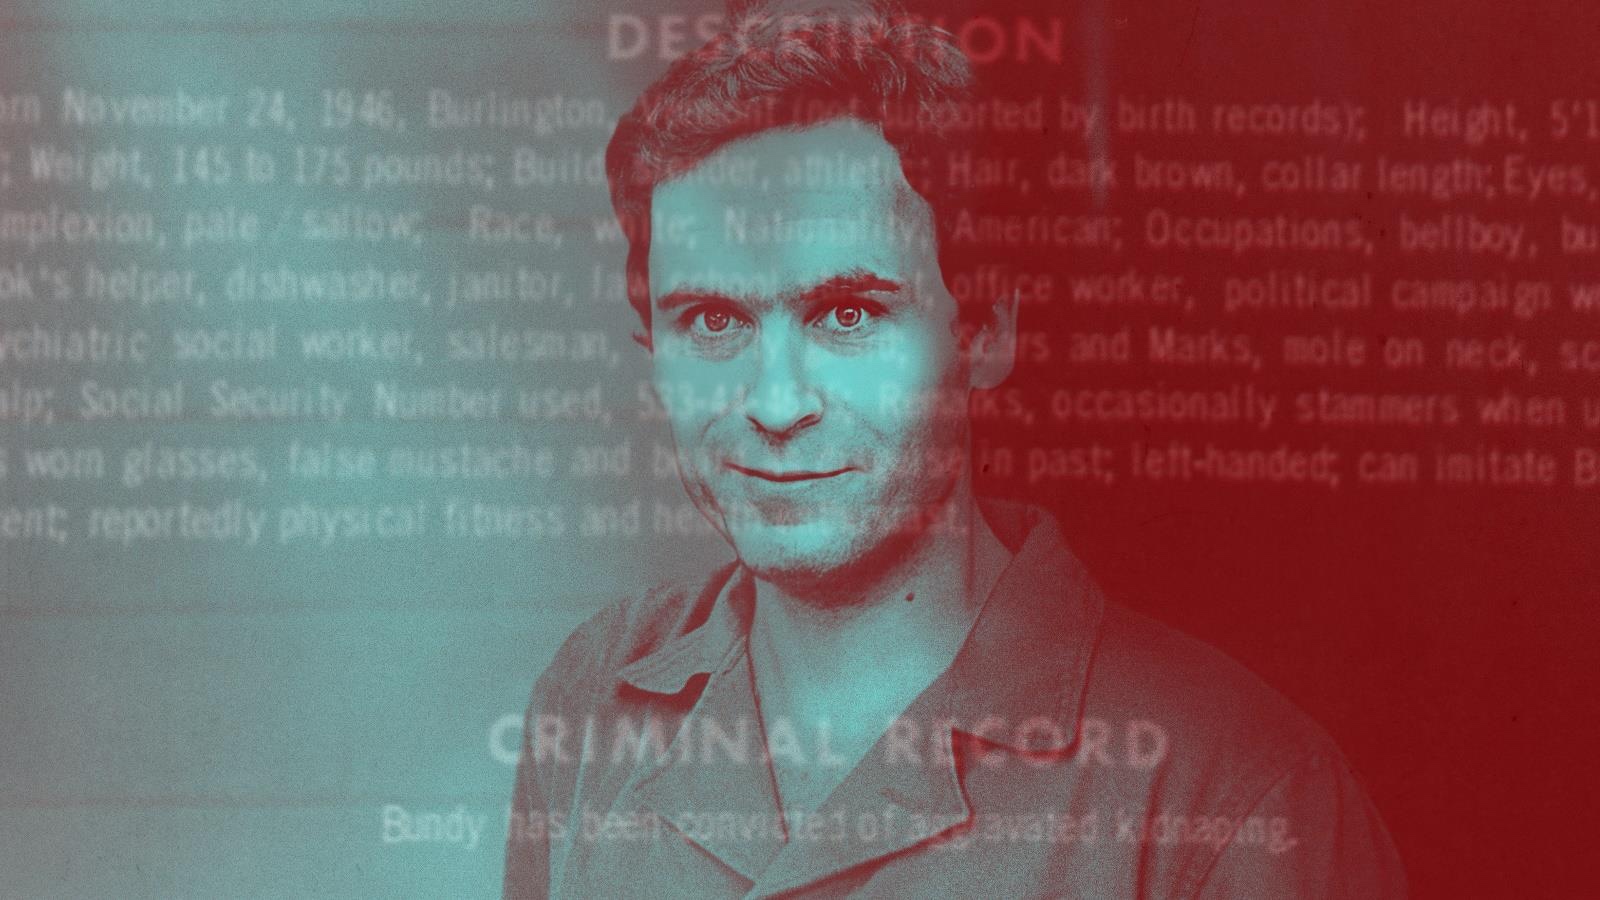 Programmation spéciale "Discovery Confidentiel" dédiée au Serial Killer Ted Bundy, les 20 et 27 octobre sur Discovery Channel